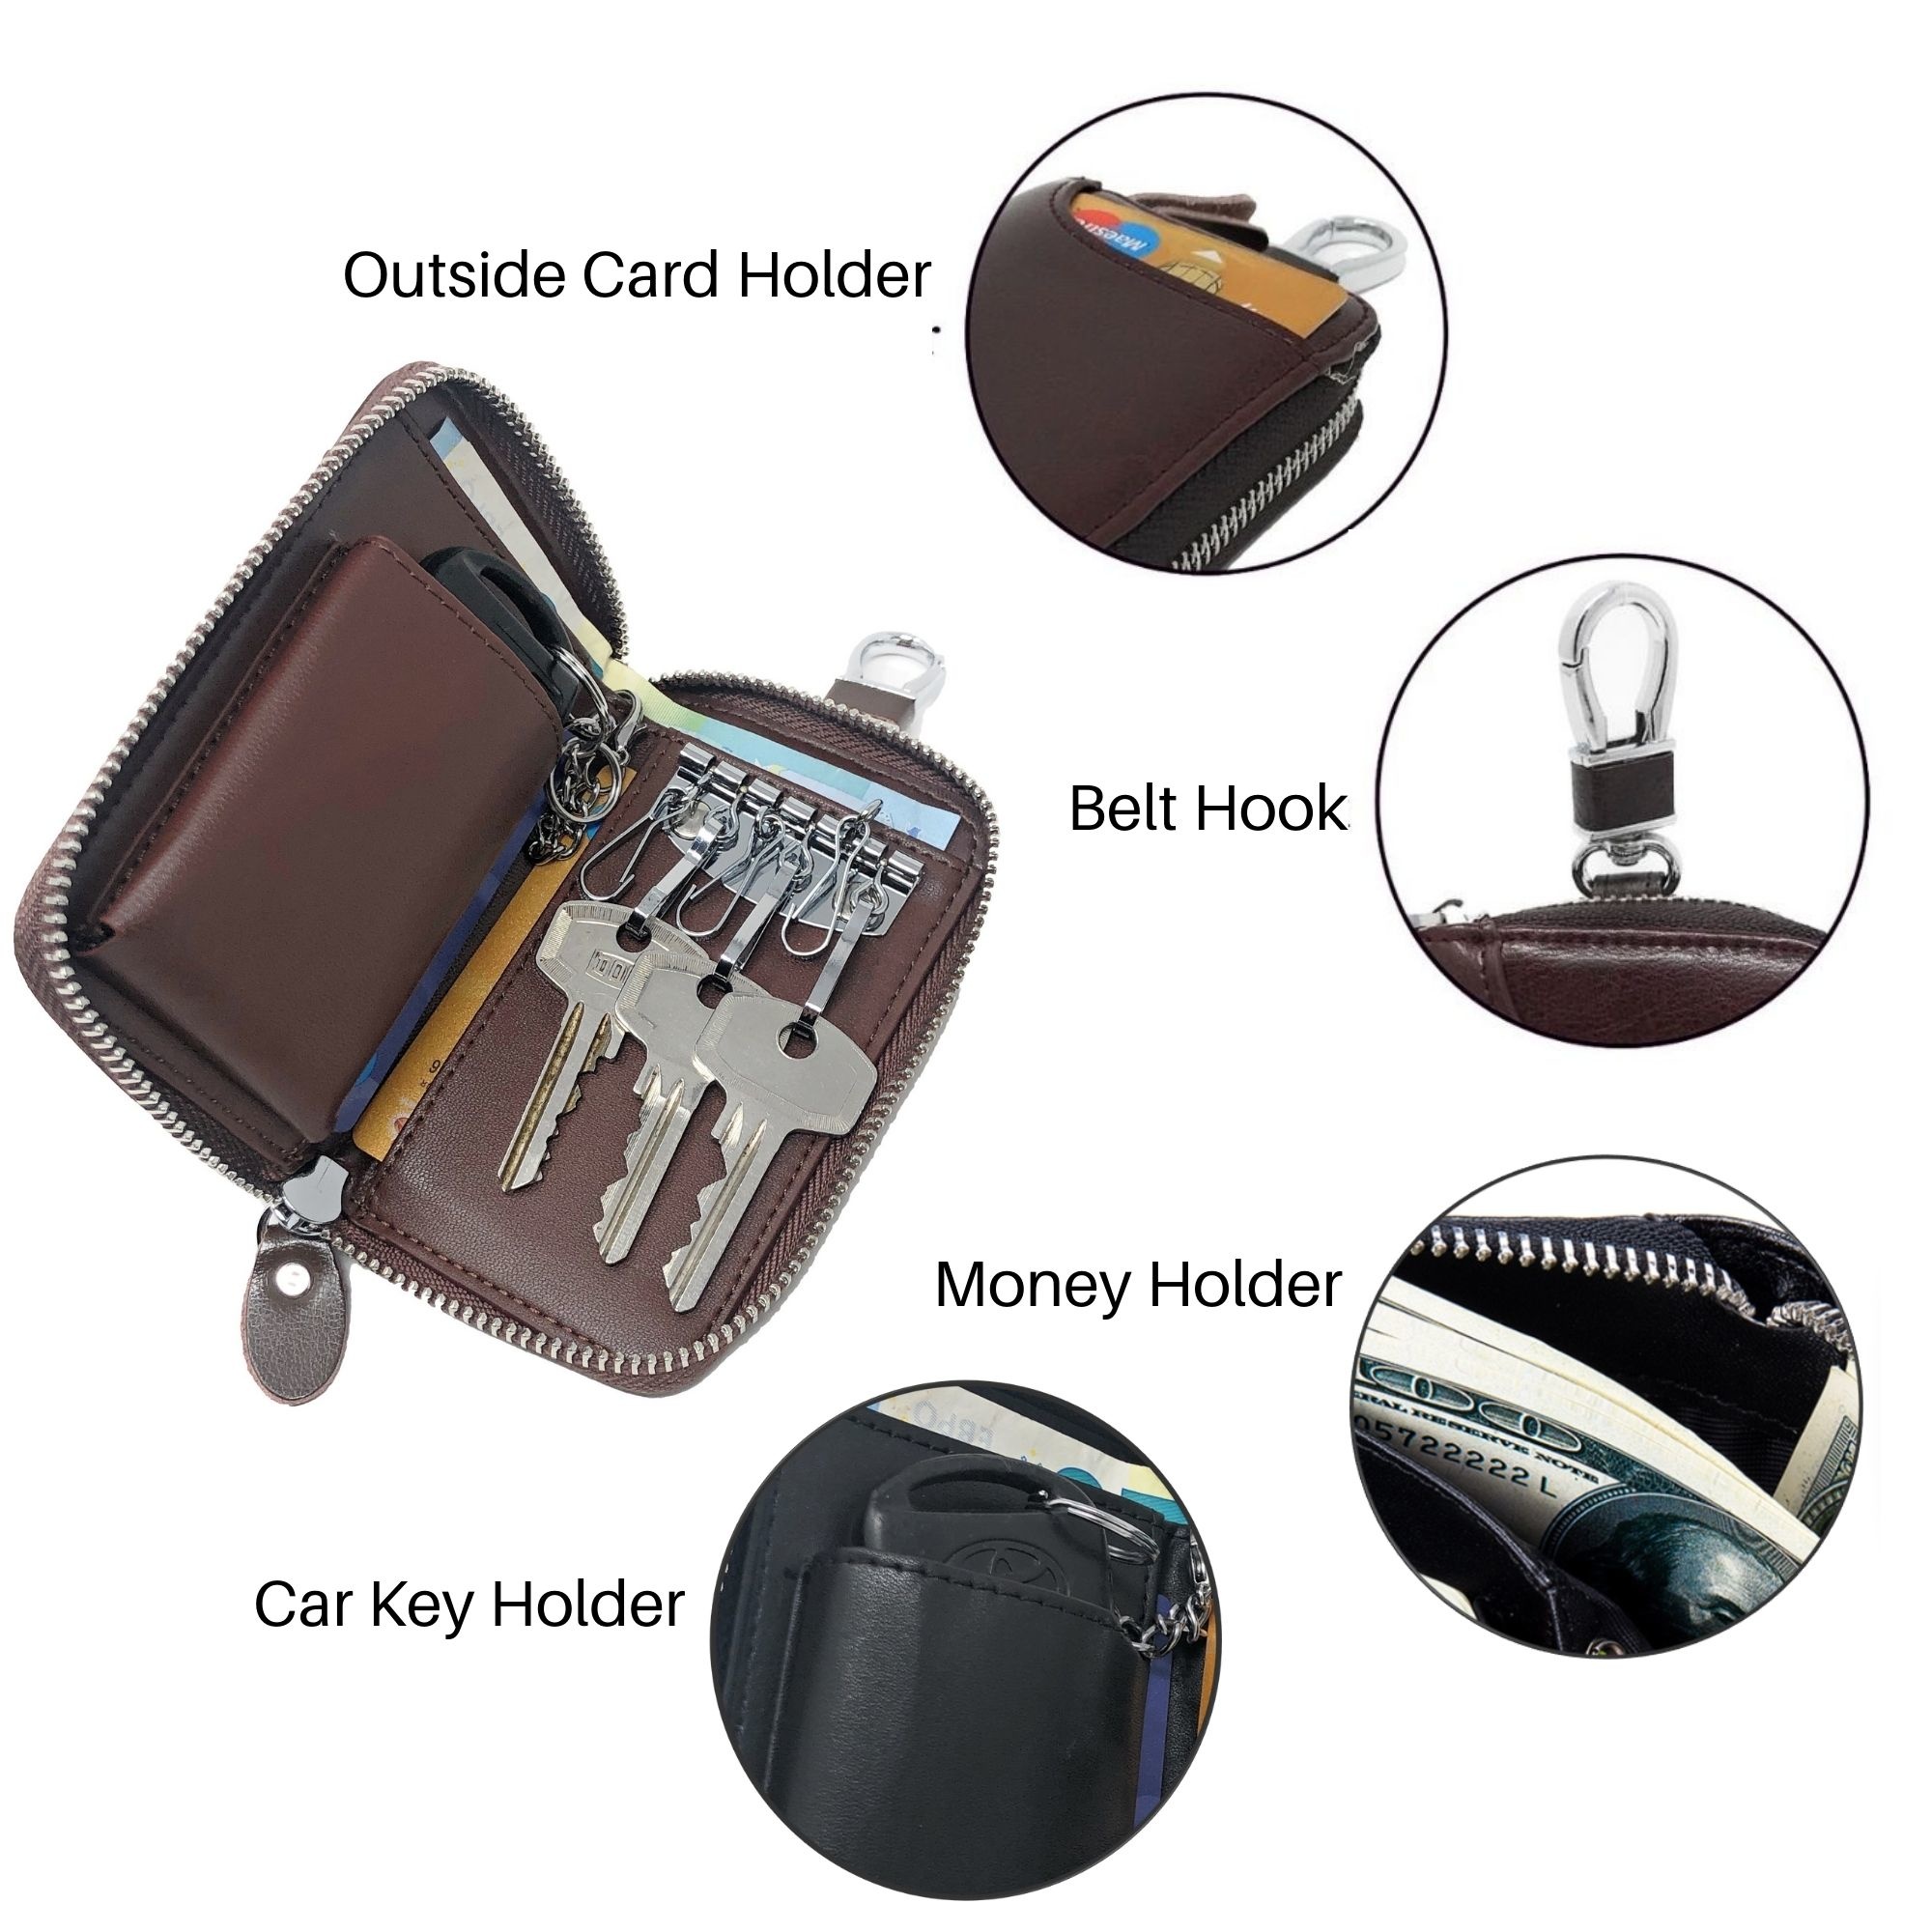 Leder-Schlüsseletui, 6 Schlüsselhaken, Kartenhalter, Geldschein-Brieftasche, Autoschlüsseltasche, Multifunktions-Schlüssel-Organizer - Braun-8